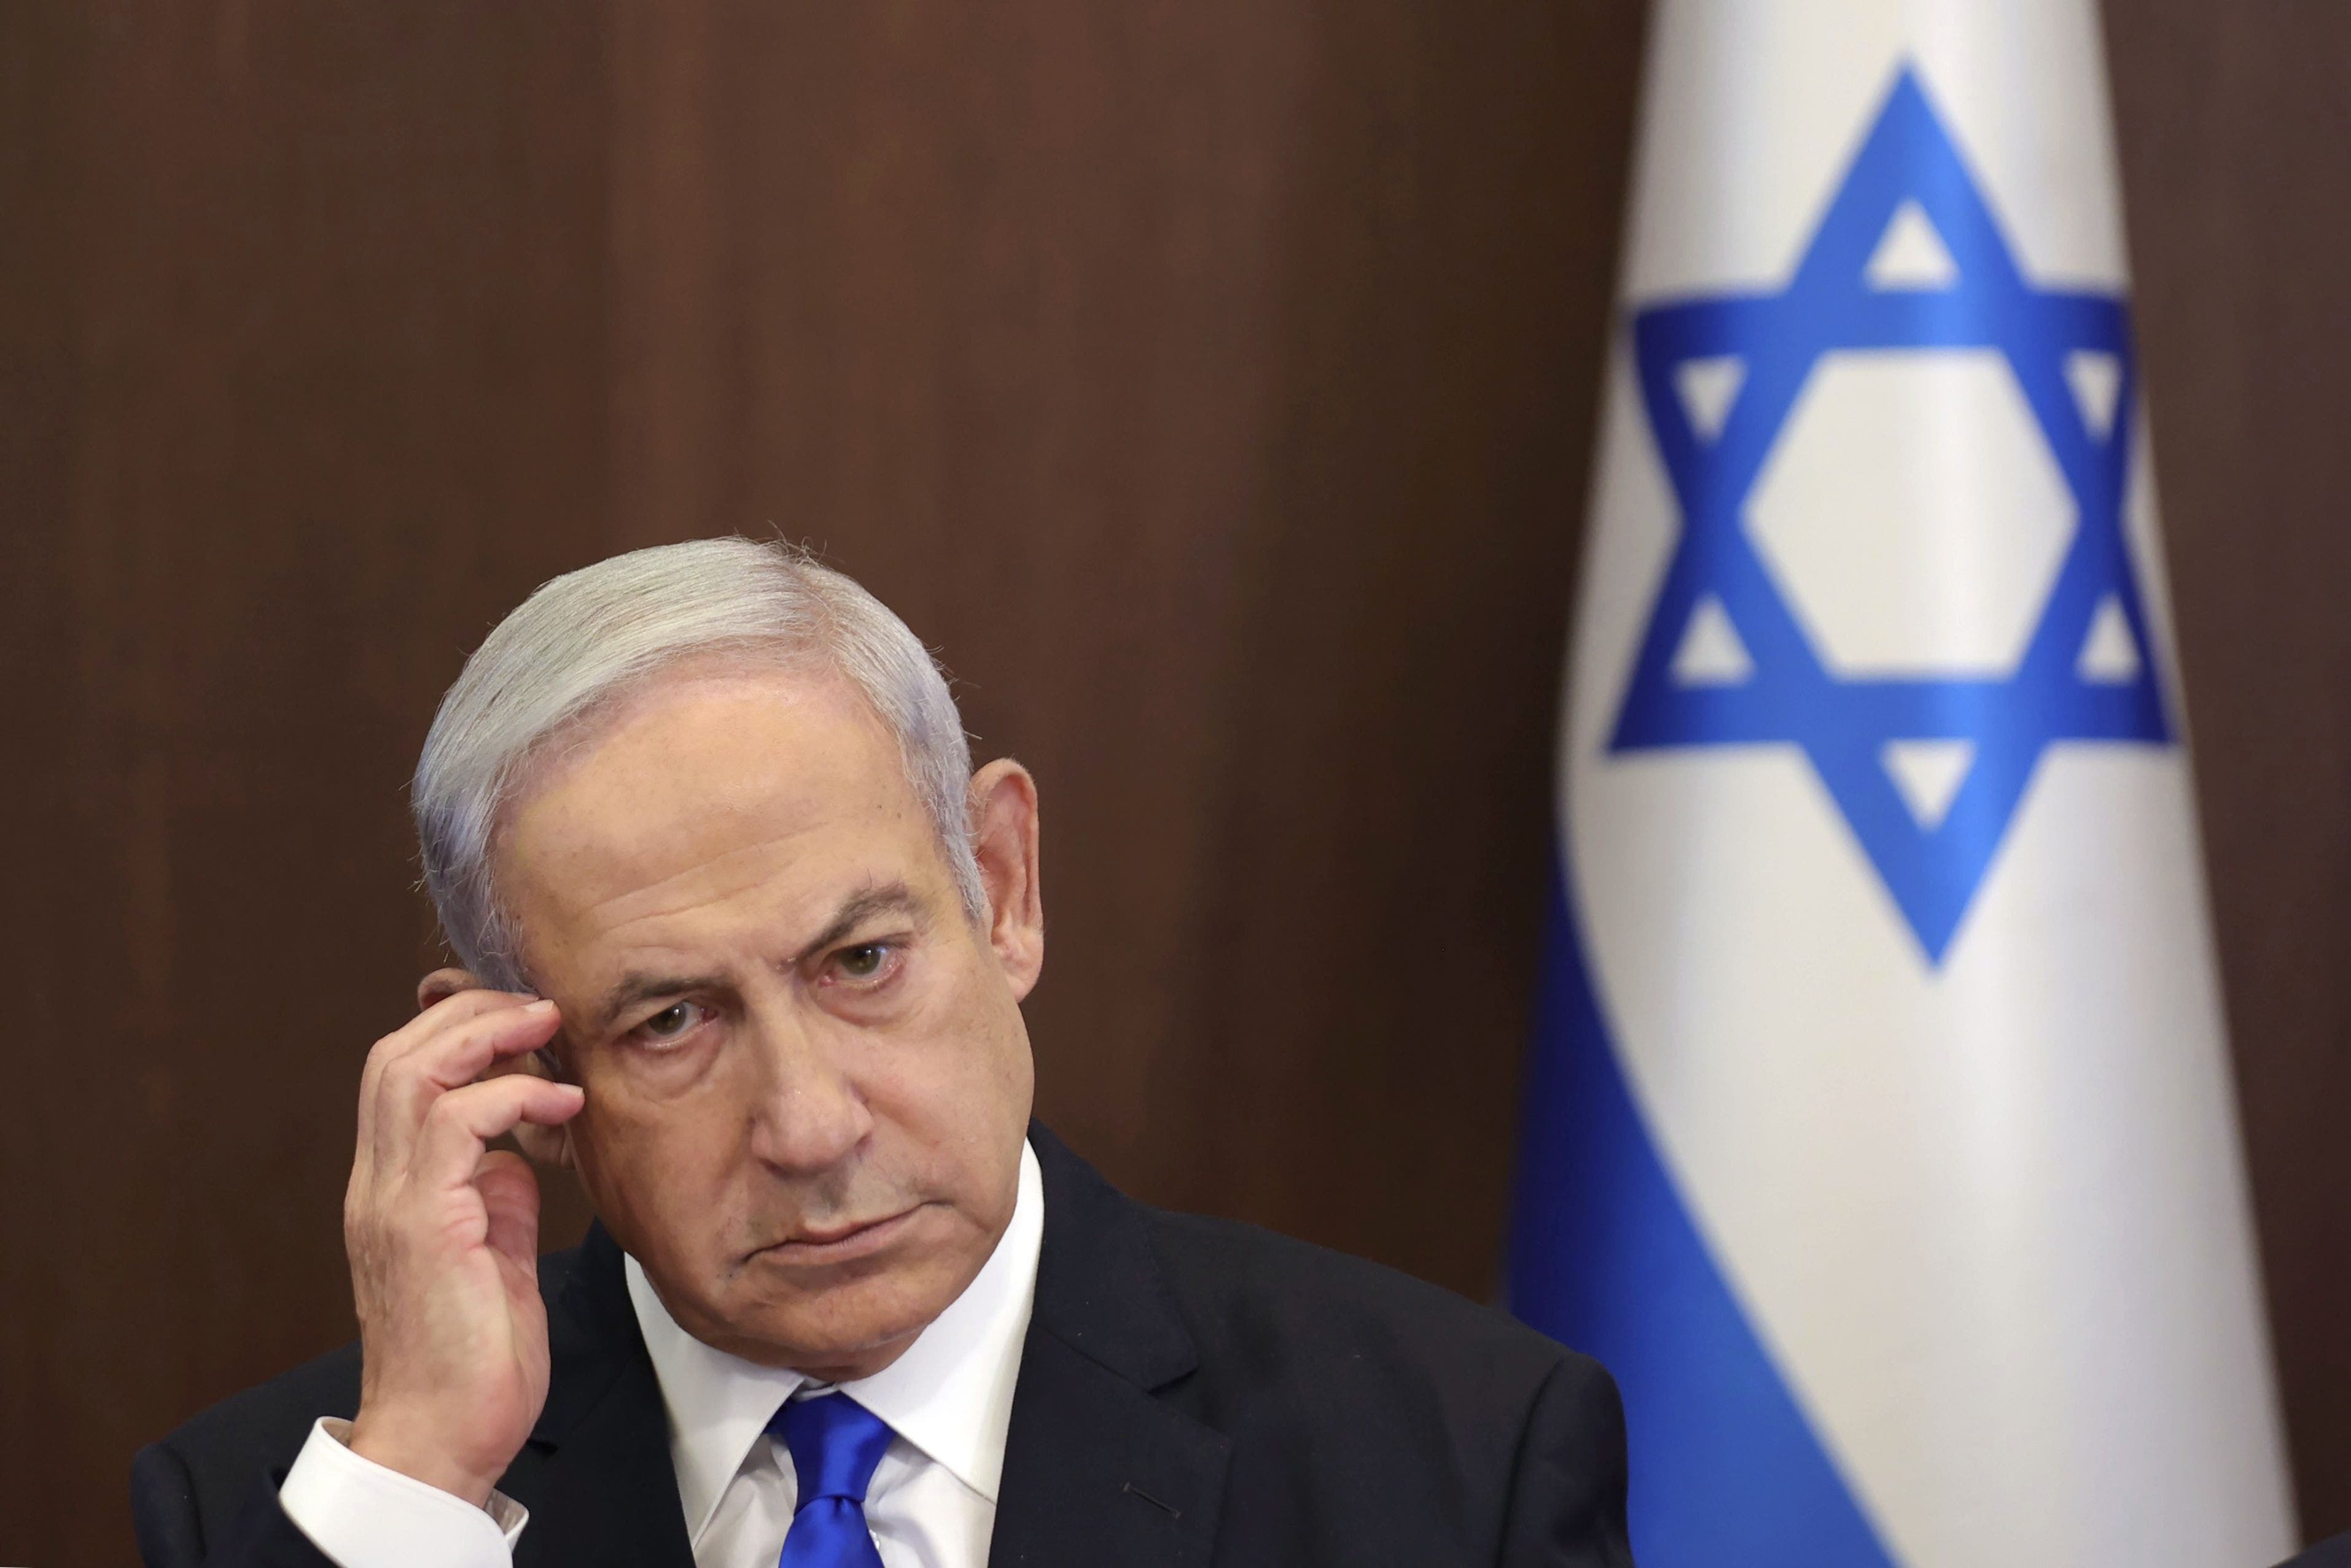 kommt bald ein haftbefehl gegen netanyahu? die ermittlungen des icc sorgen in israel für nervosität